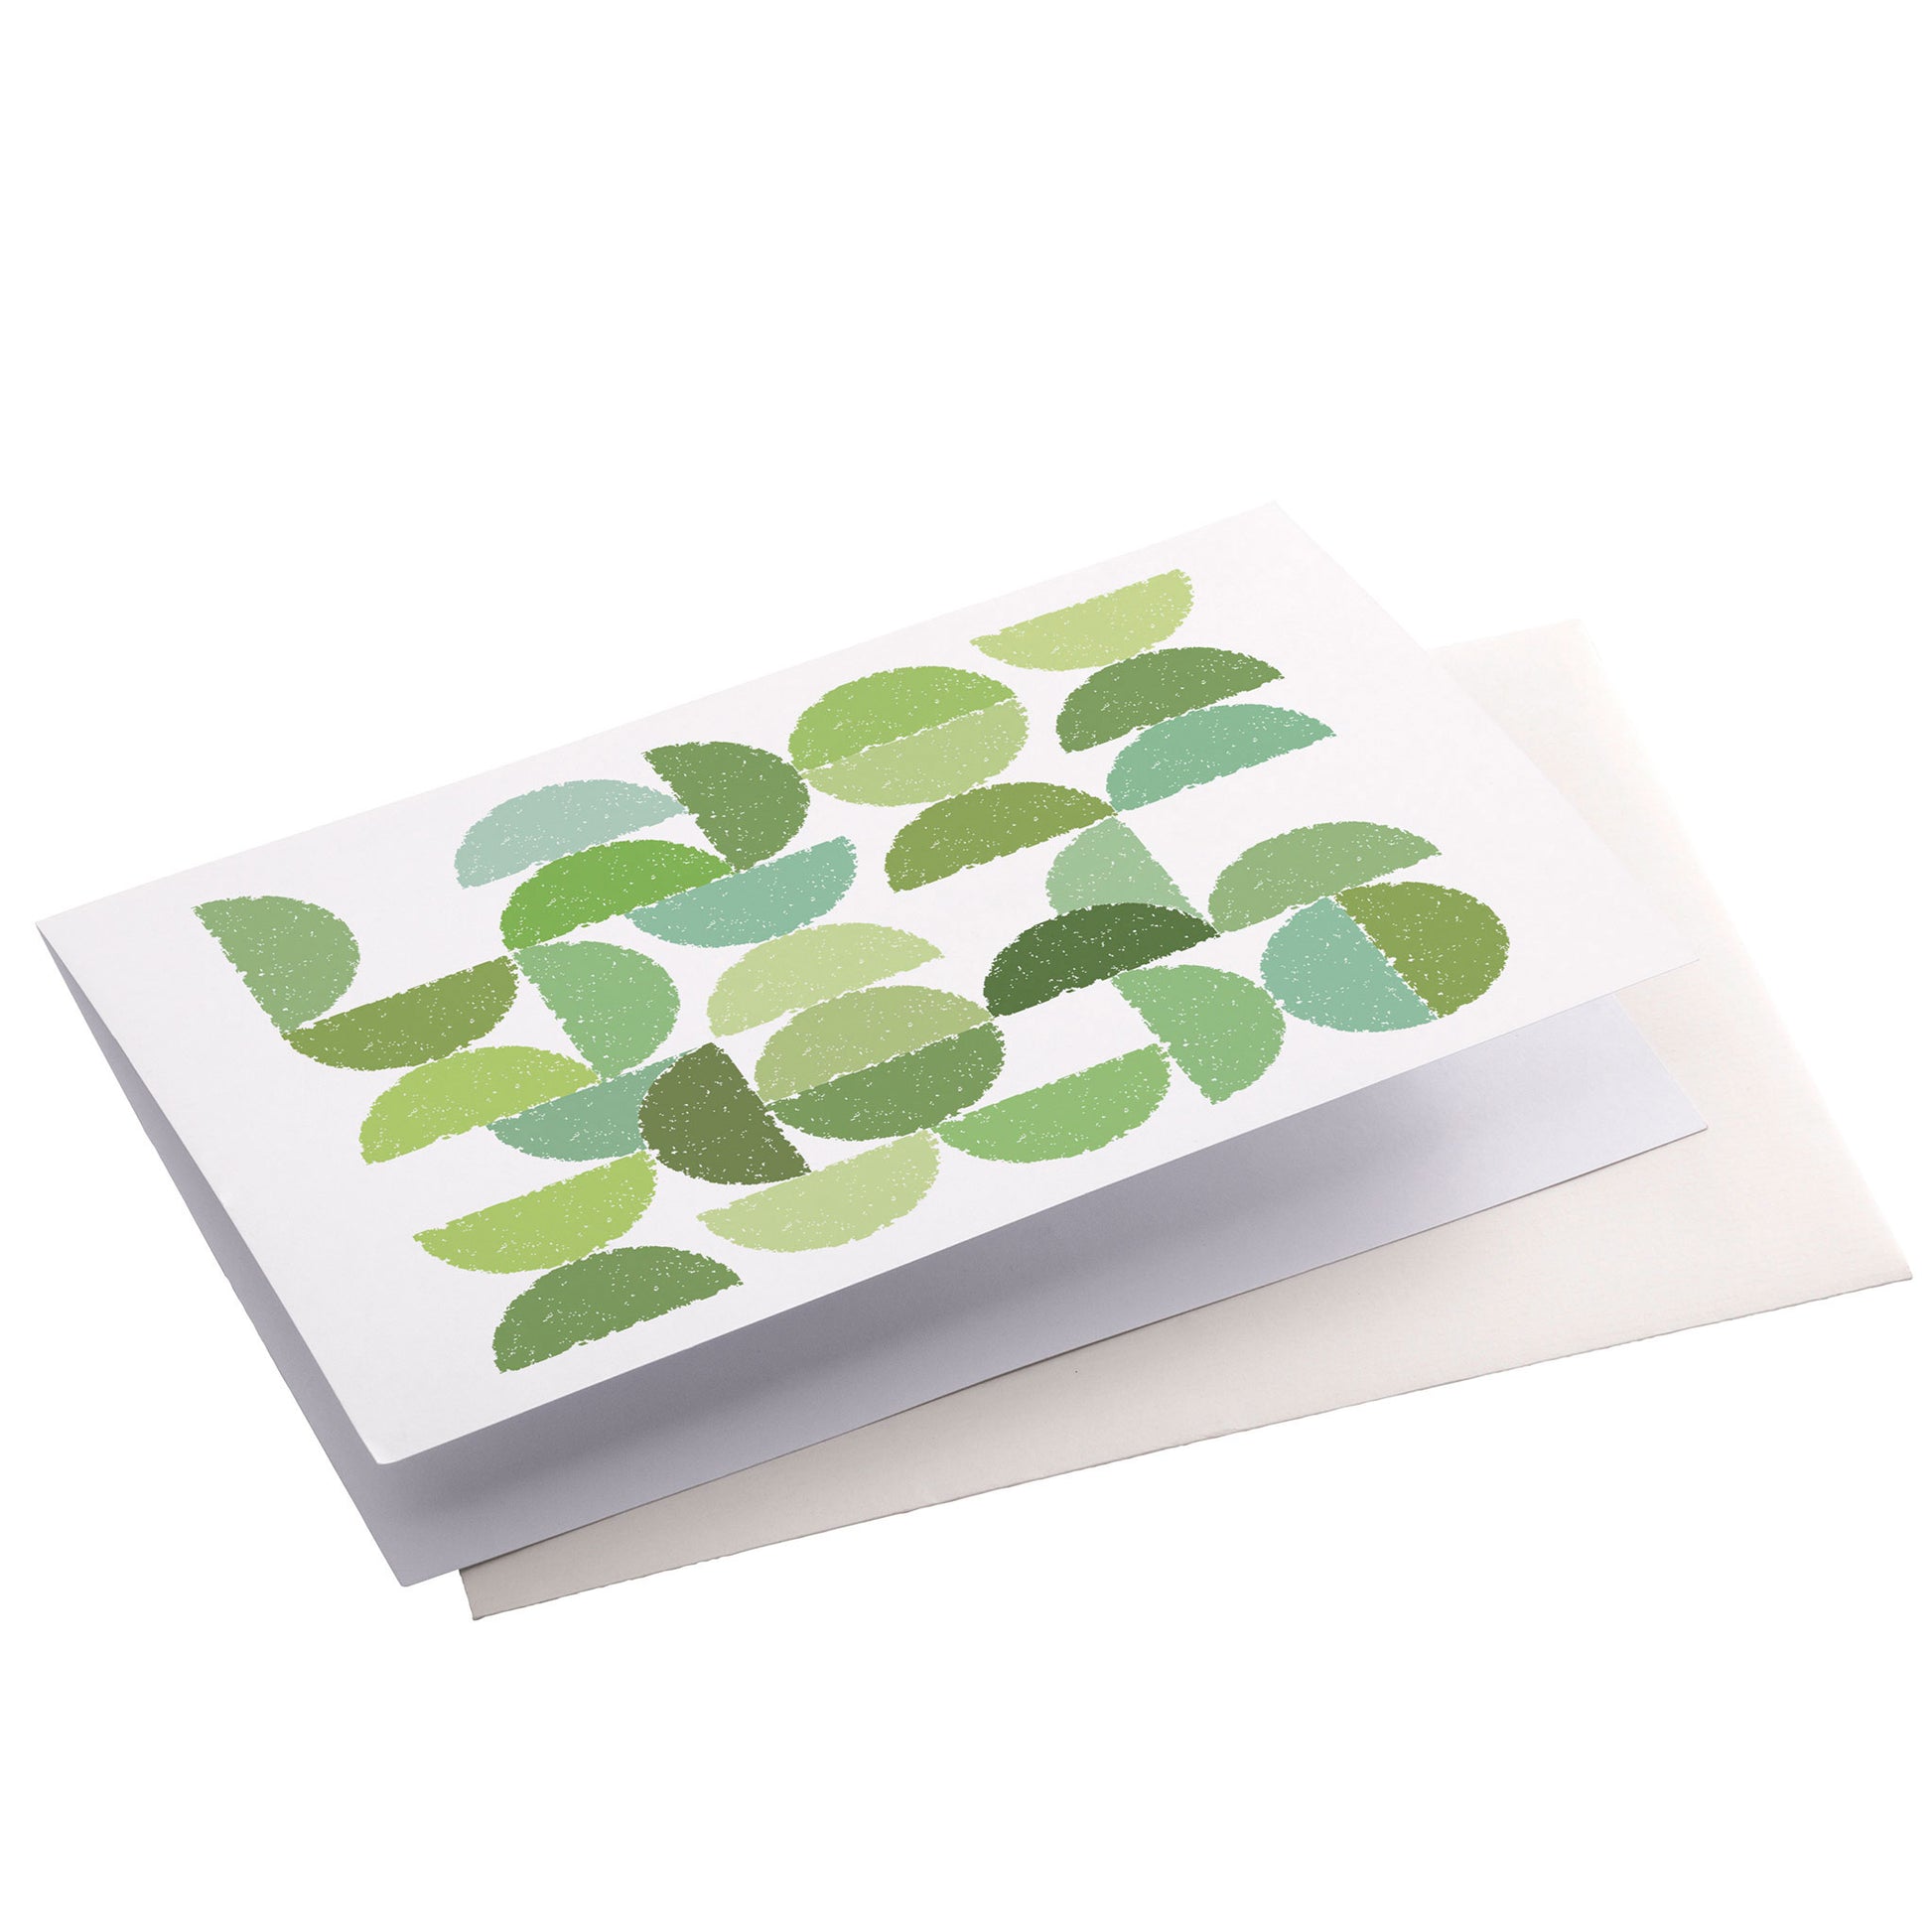 Productafbeelding wenskaart "ronde kleuren naar bladgroen" zijaanzicht liggend met envelop